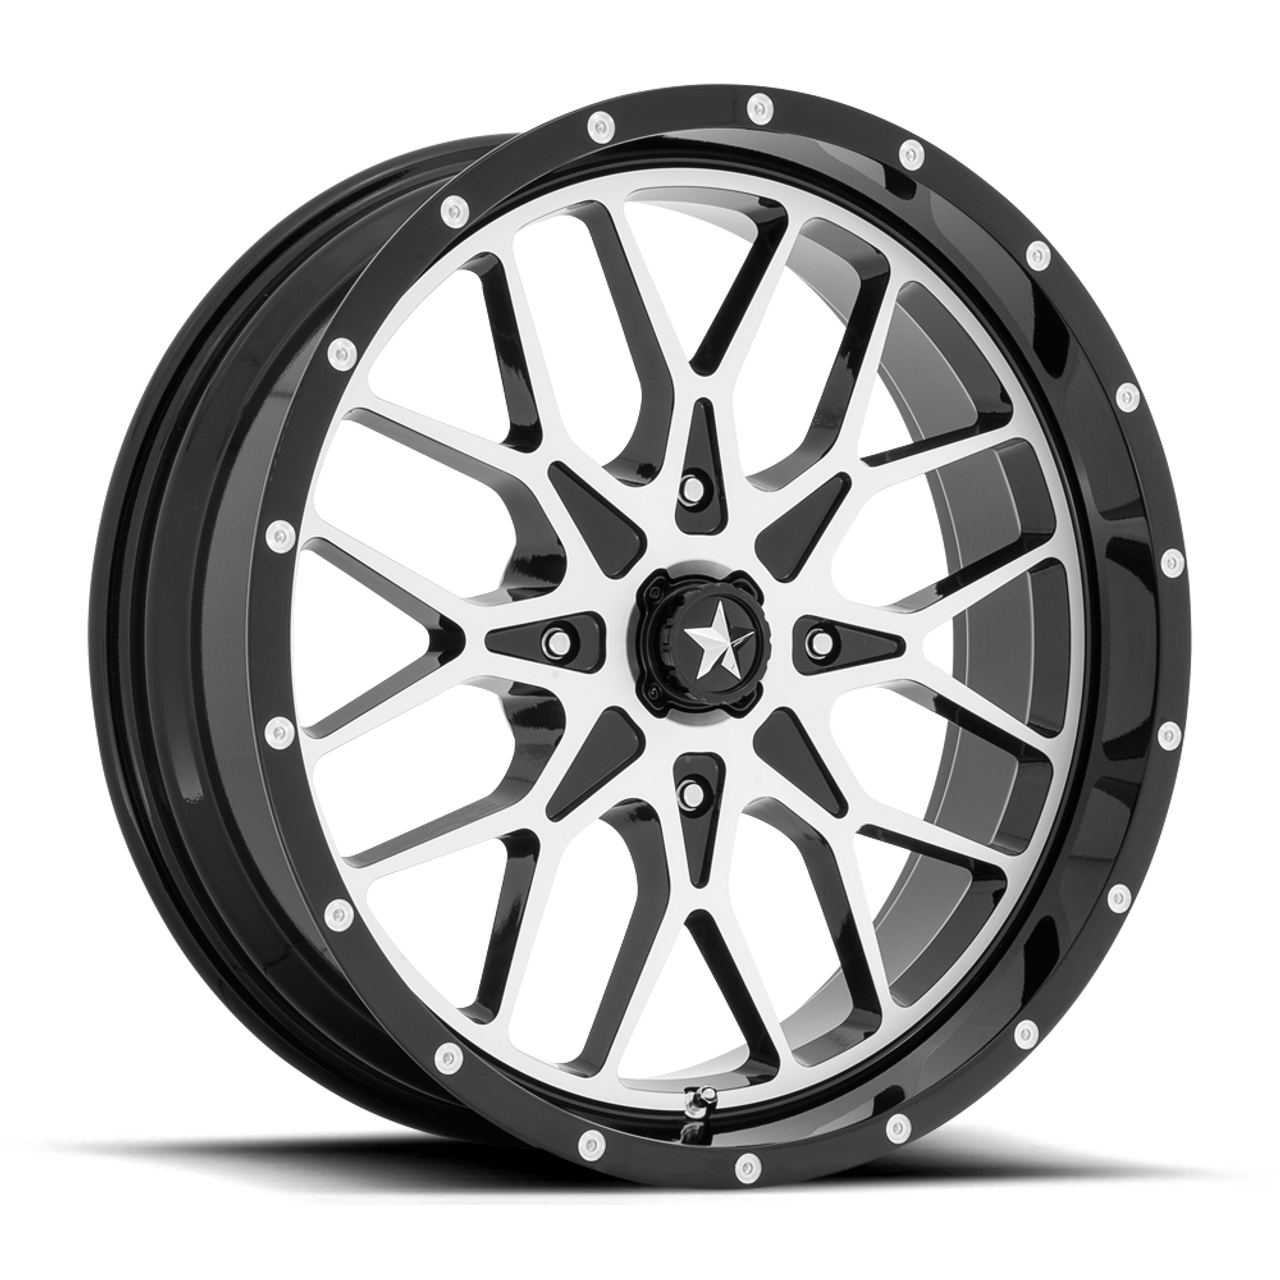 MSA Offroad Wheels M45 Portal 20x7 4x110 Gloss Black Machined Wheel 20" 0mm Rim